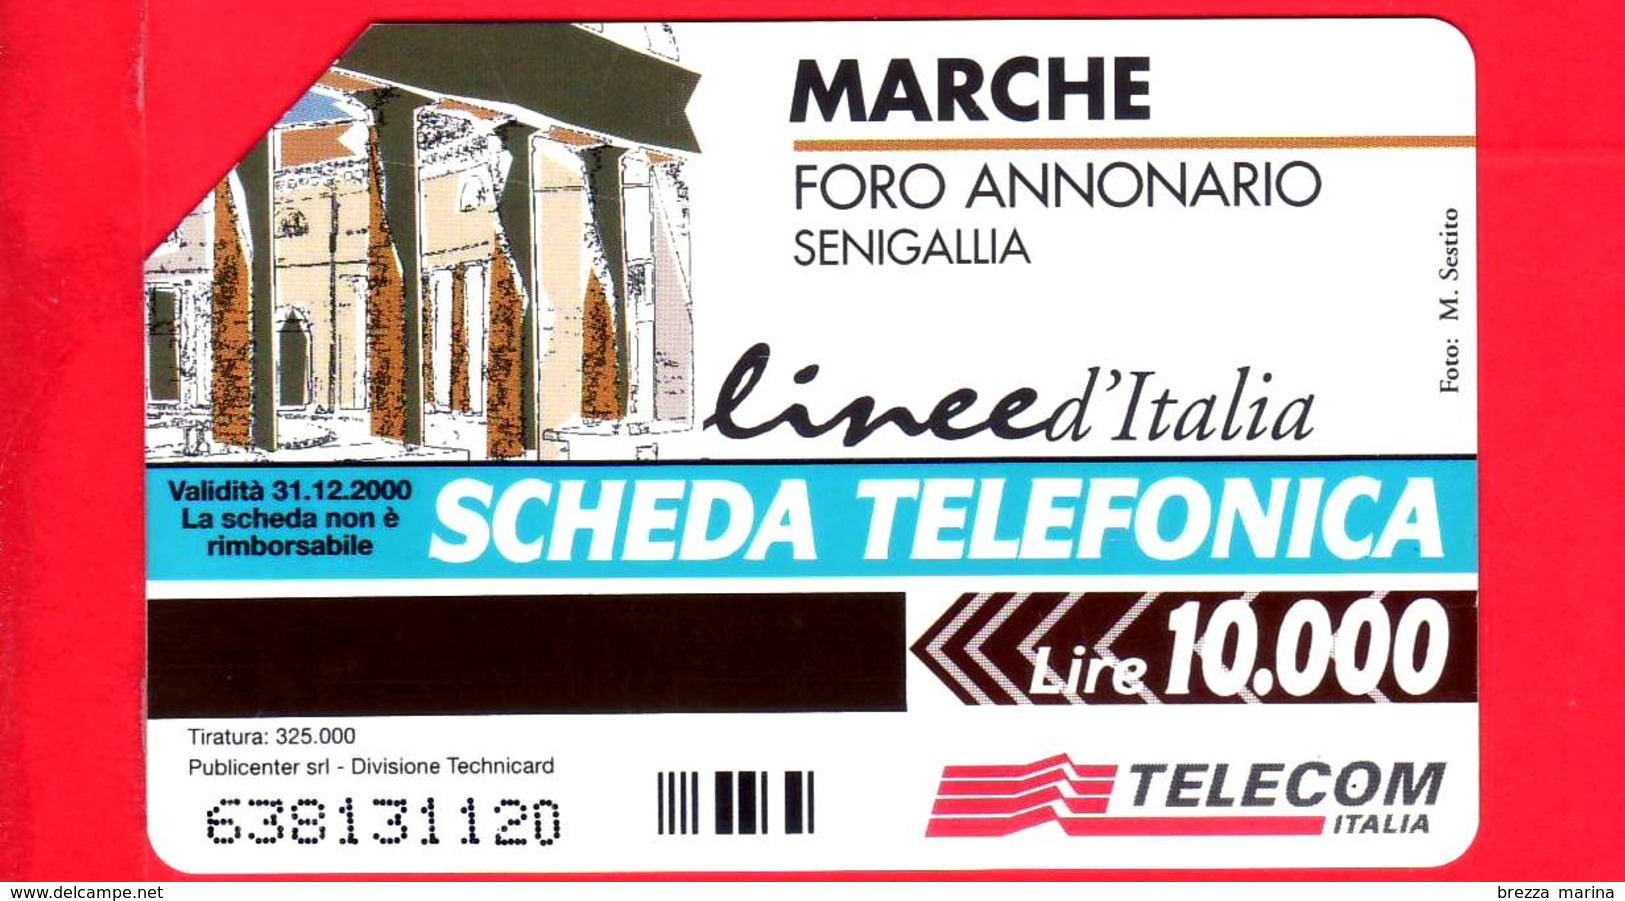 ITALIA - Scheda Telefonica - Telecom - Foro Annonario - Senigallia - Golden 900 - C&C 2982 - 10.000 - 31.12.00 - Pub - Pubbliche Ordinarie